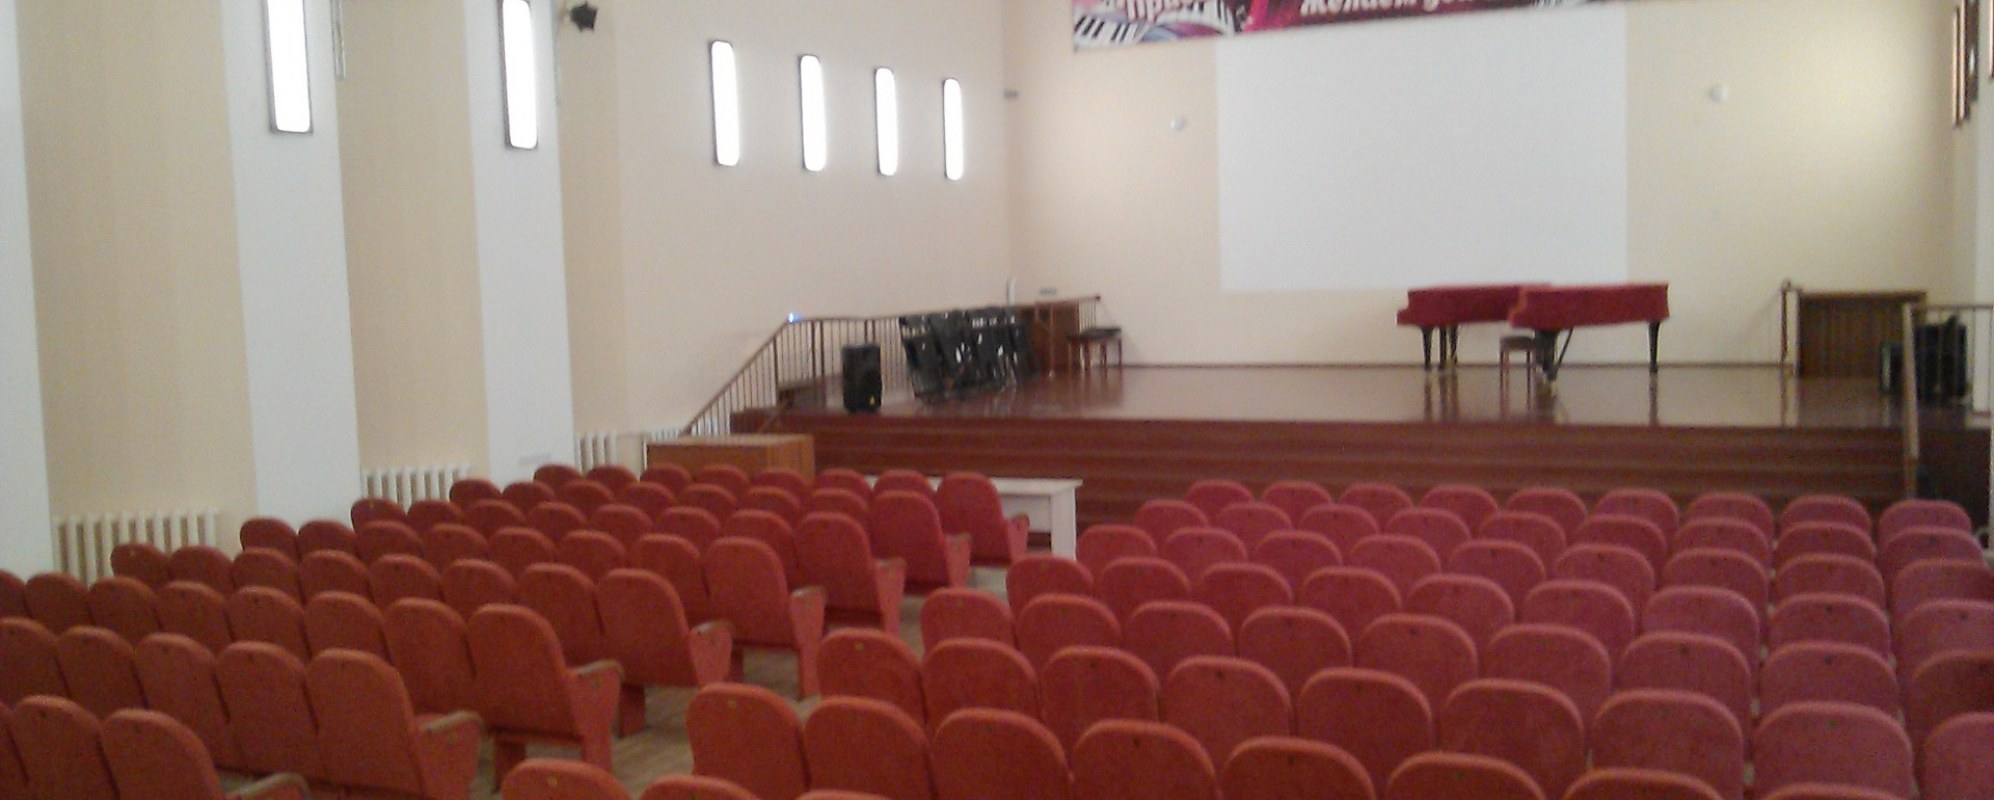 Фотографии концертного зала БДМШ5